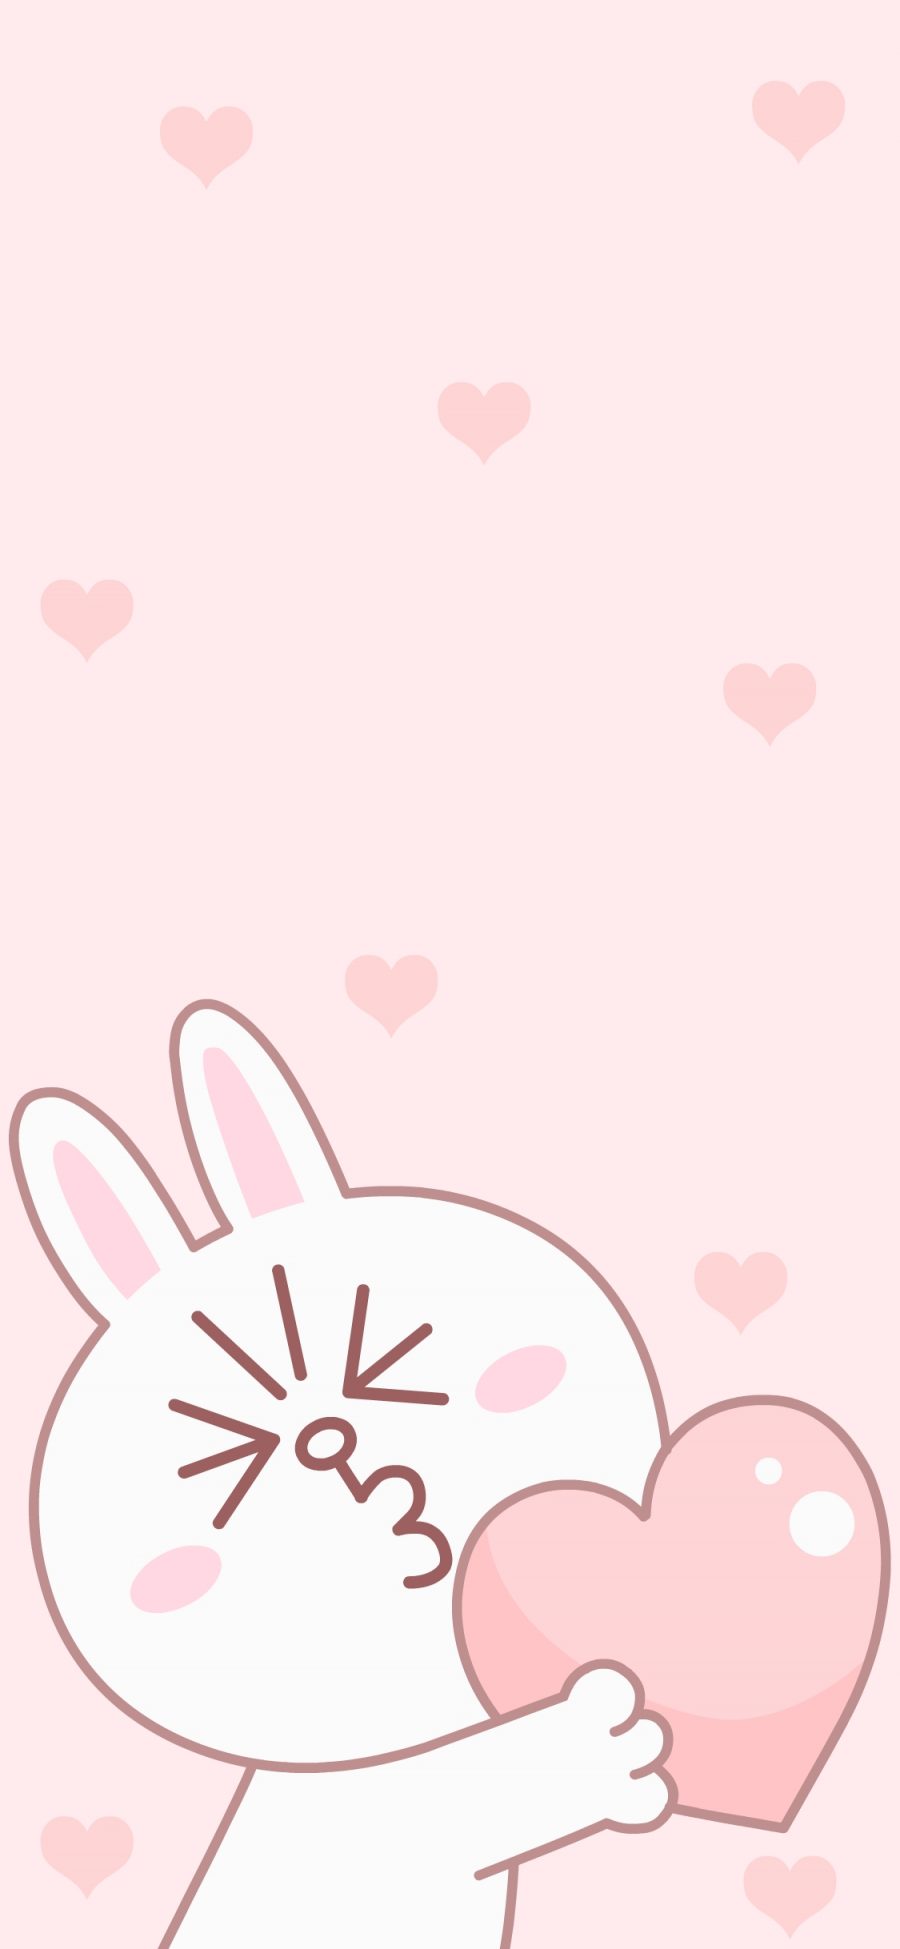 [2436×1125]可妮兔 爱心 line friends 粉色 苹果手机动漫壁纸图片